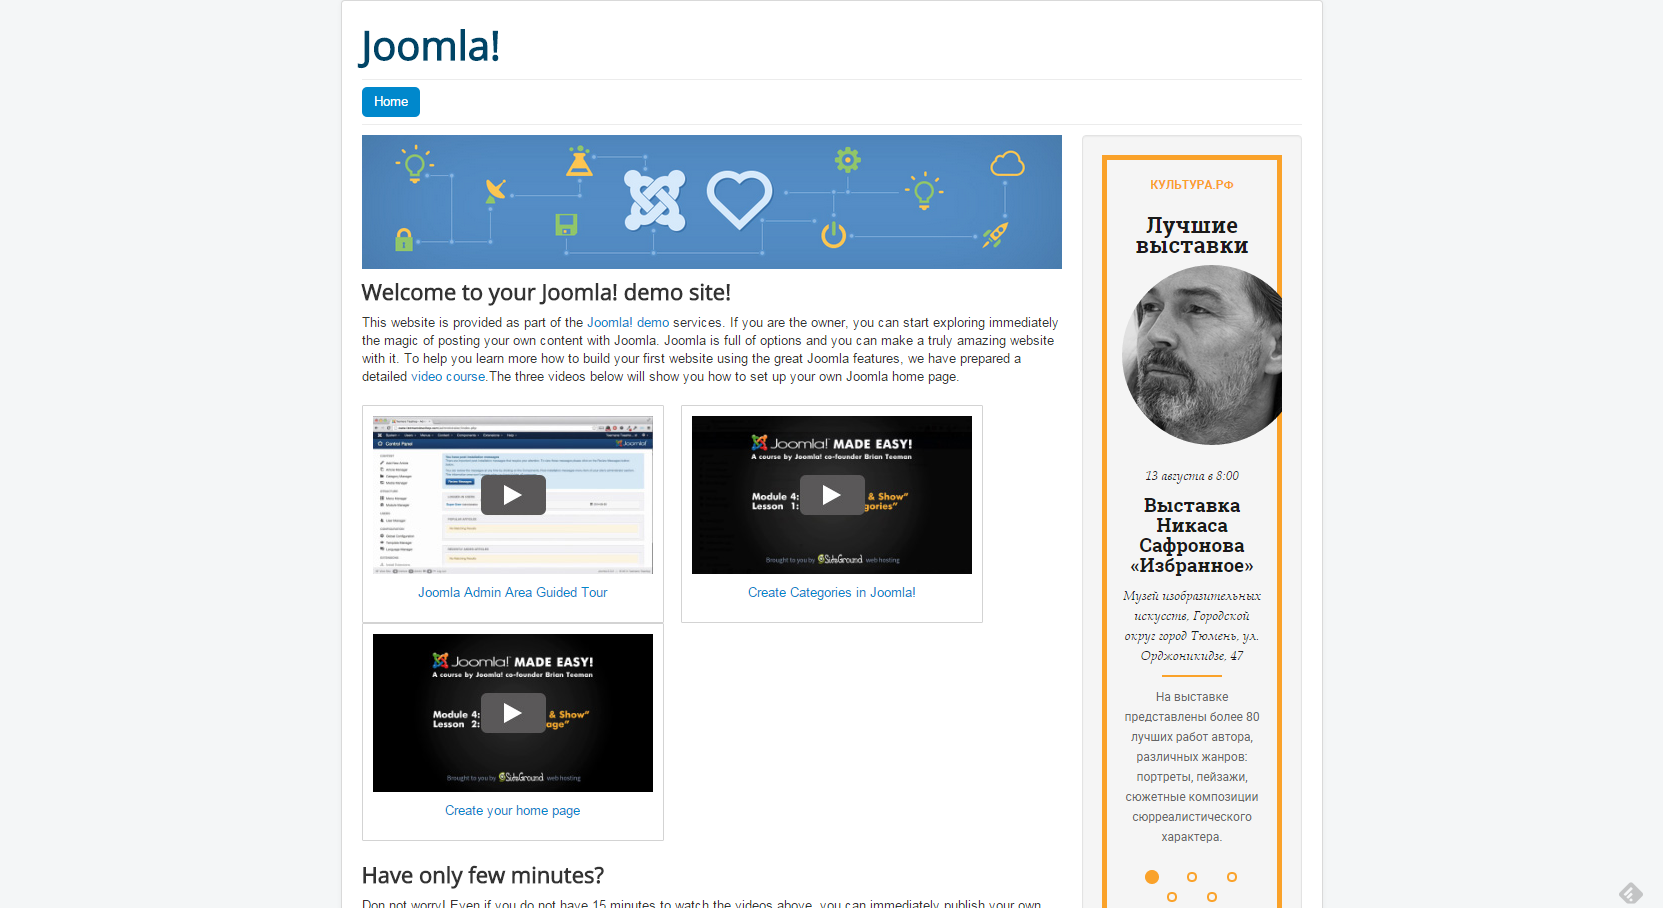 Как встроить виджет платформы «PRO.Культура.РФ» на сайты, работающие на Joomla